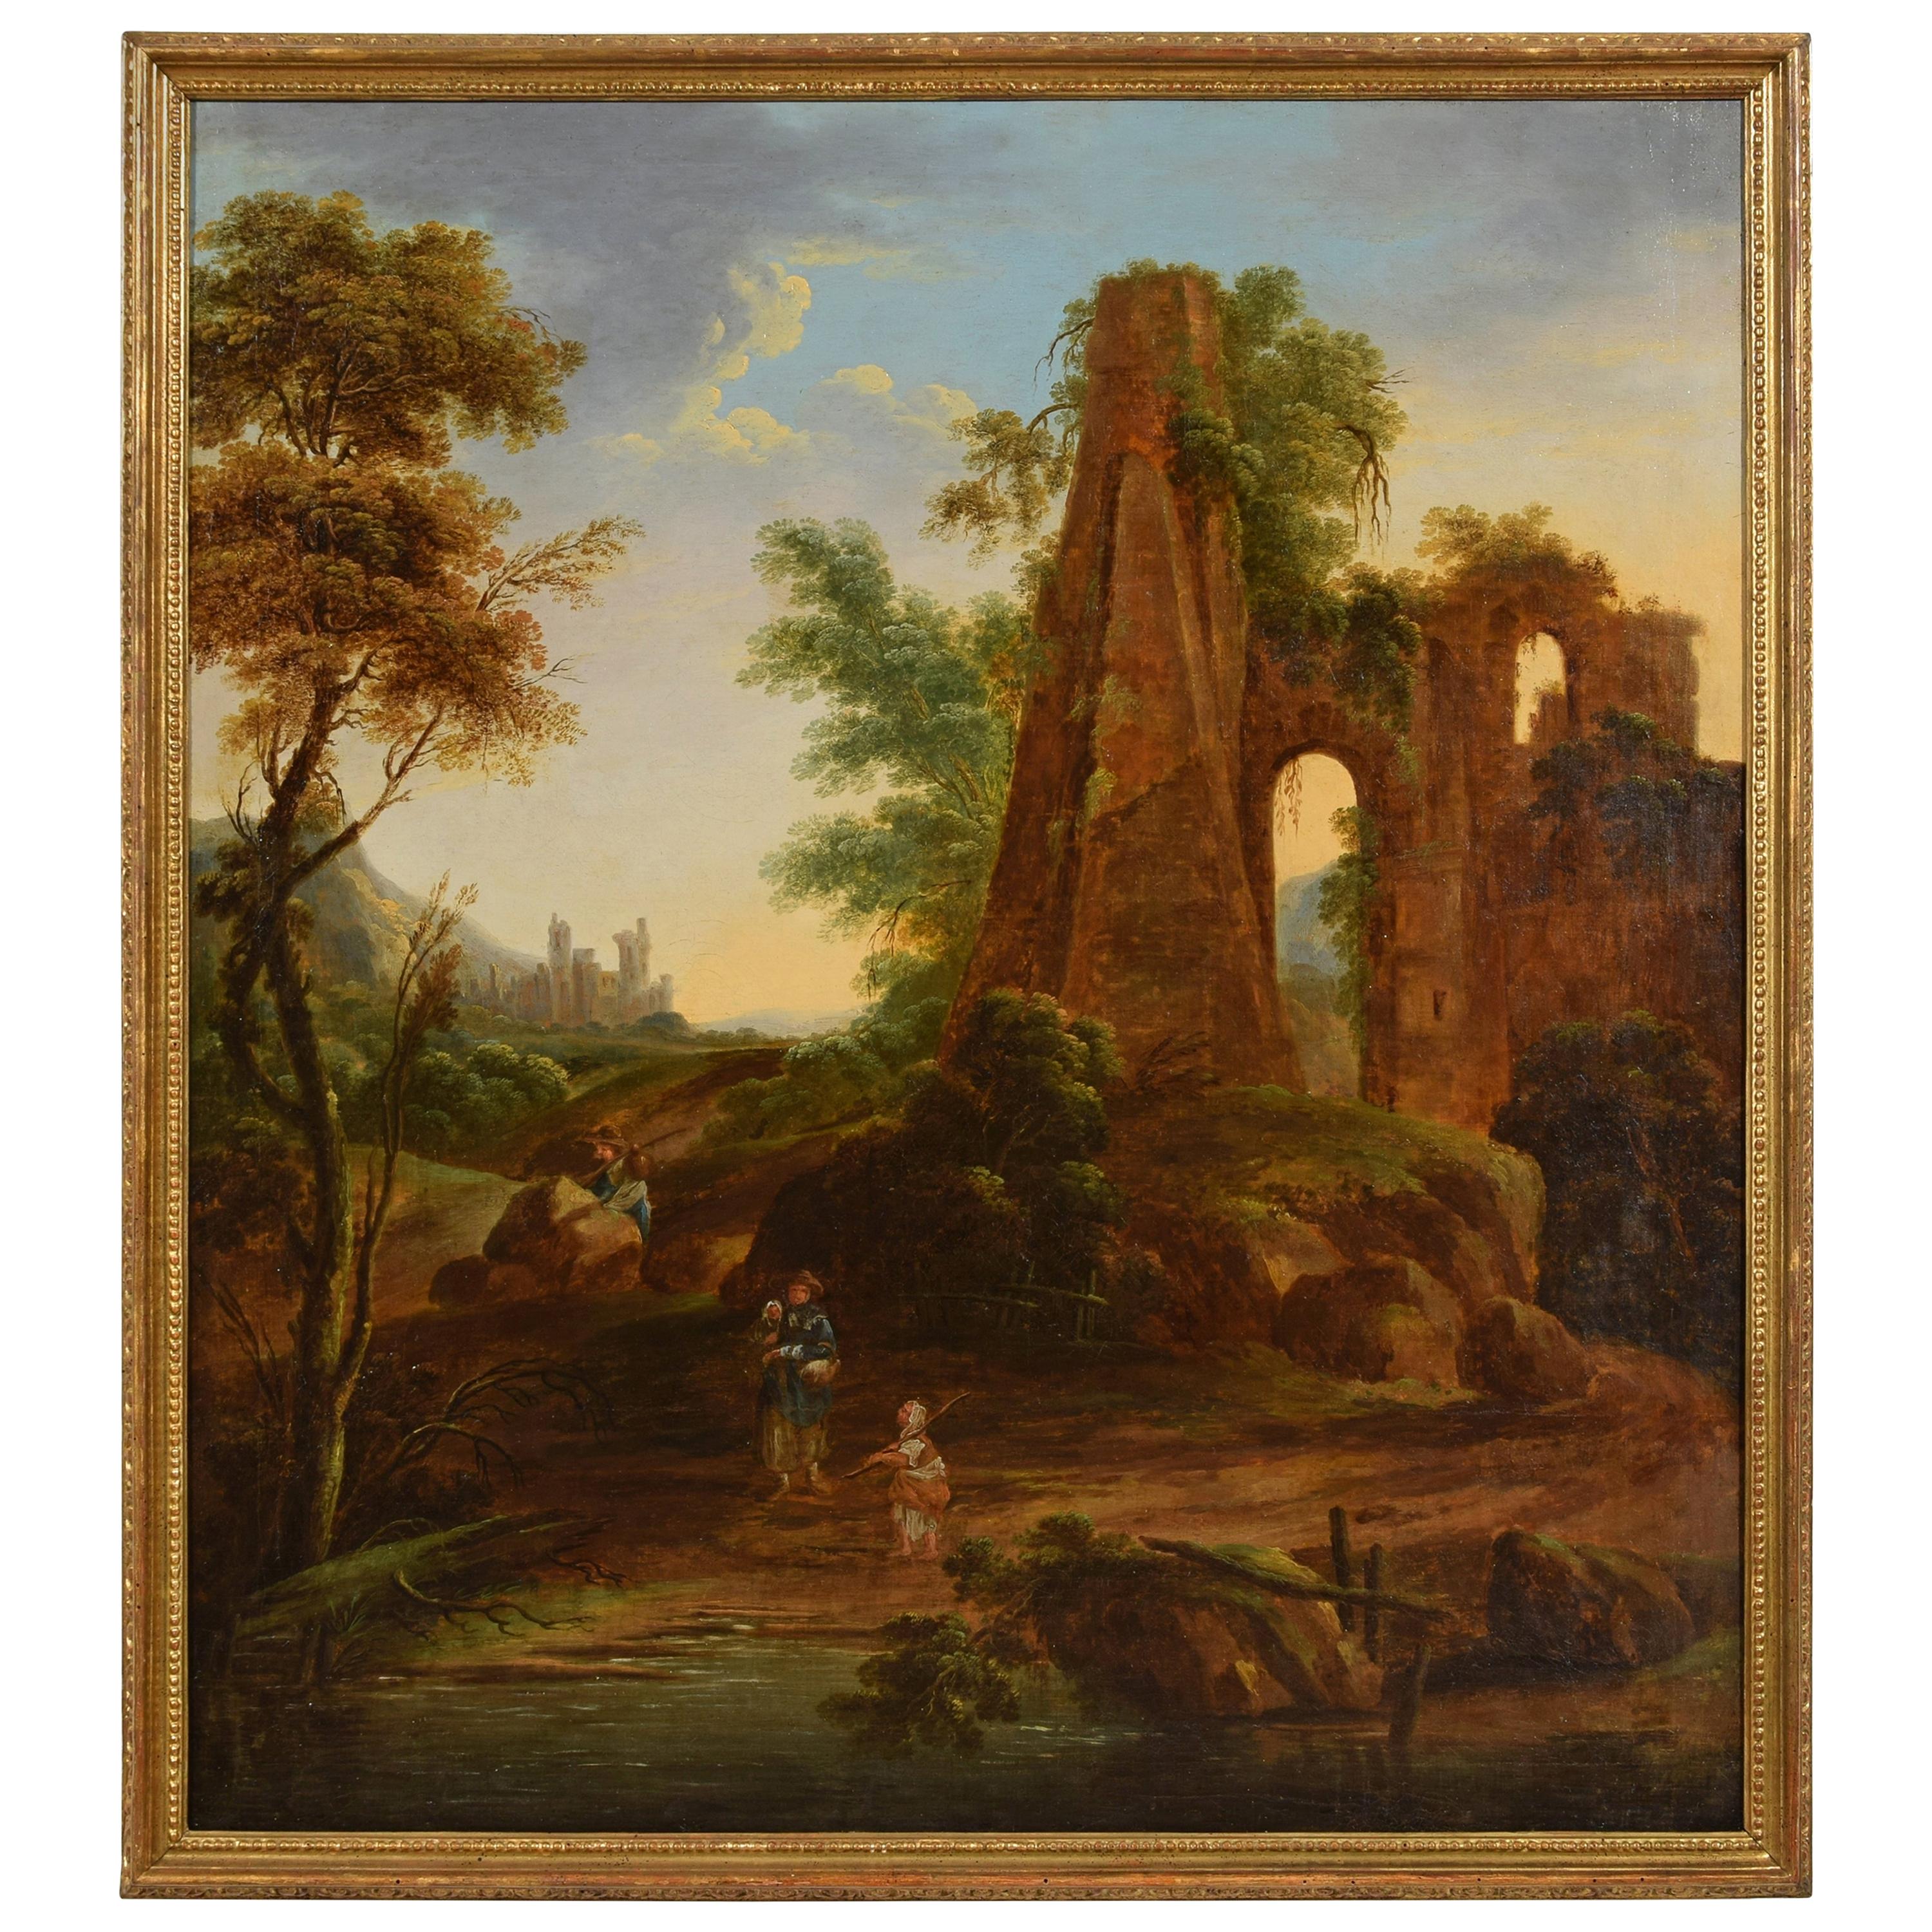 Italienisches Ölgemälde auf Leinwand mit Landschaft und Ruinen aus dem 18. Jahrhundert